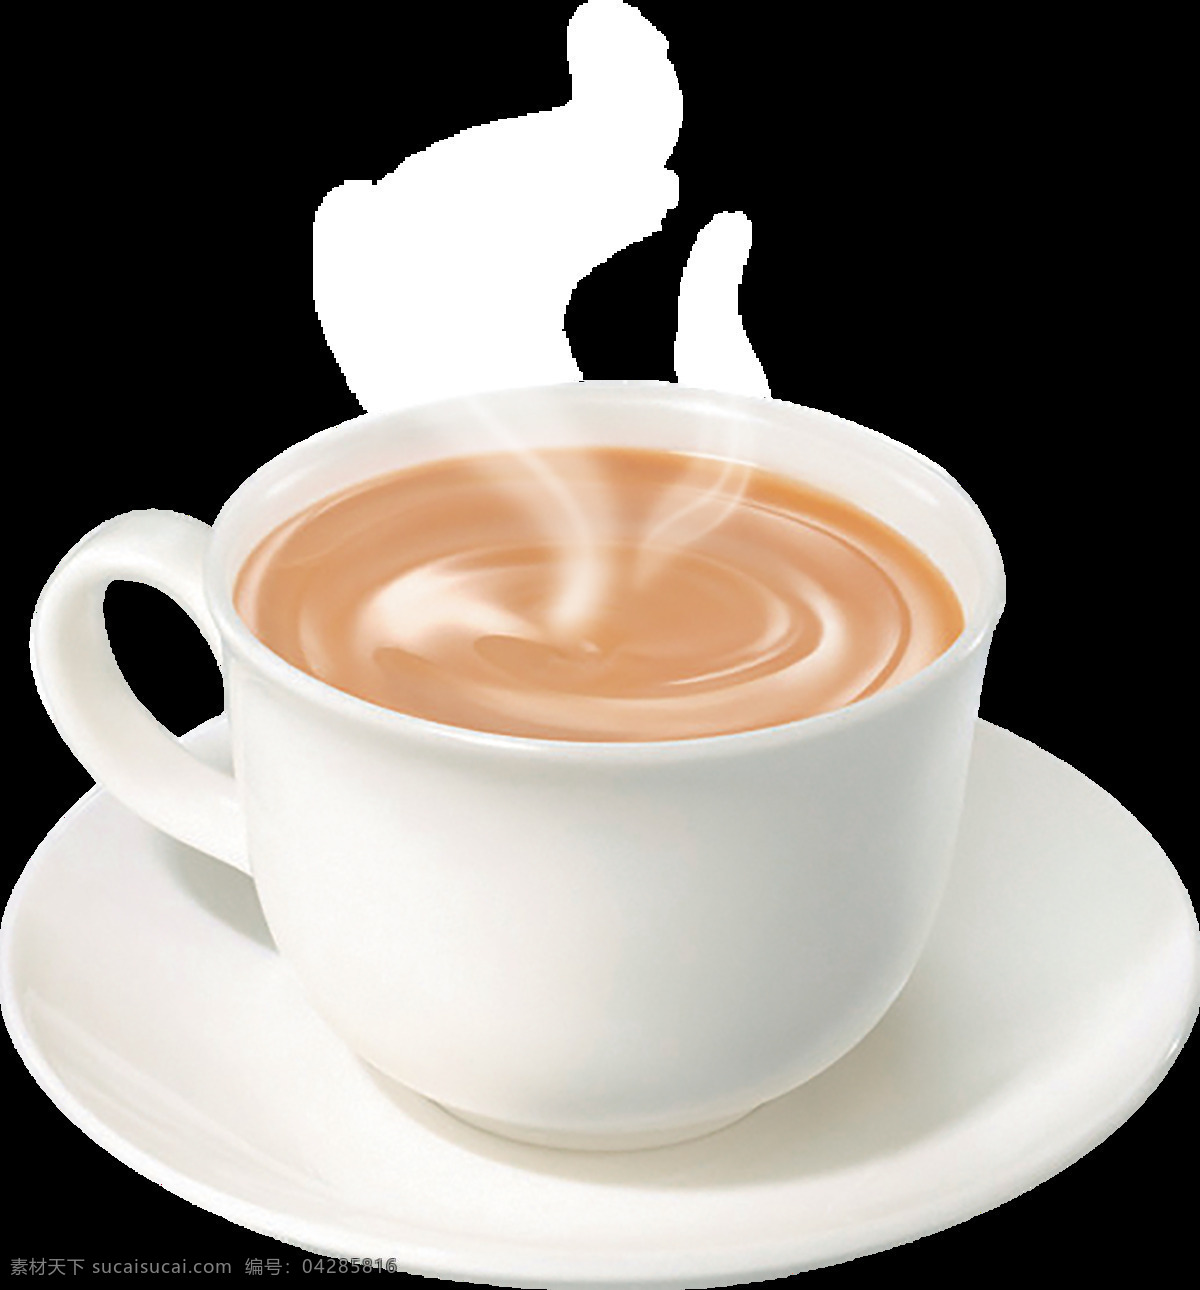 热奶咖啡 喝 热咖啡 享受 冰咖啡 黑咖啡 白咖啡 咖啡机 咖啡店 咖啡因 咖啡馆 热饮 饮料 杯子 咖啡杯 咖啡拉花 下午茶 休闲 休闲时光 咖啡摄影 冲咖啡 平面设计 菜单菜谱